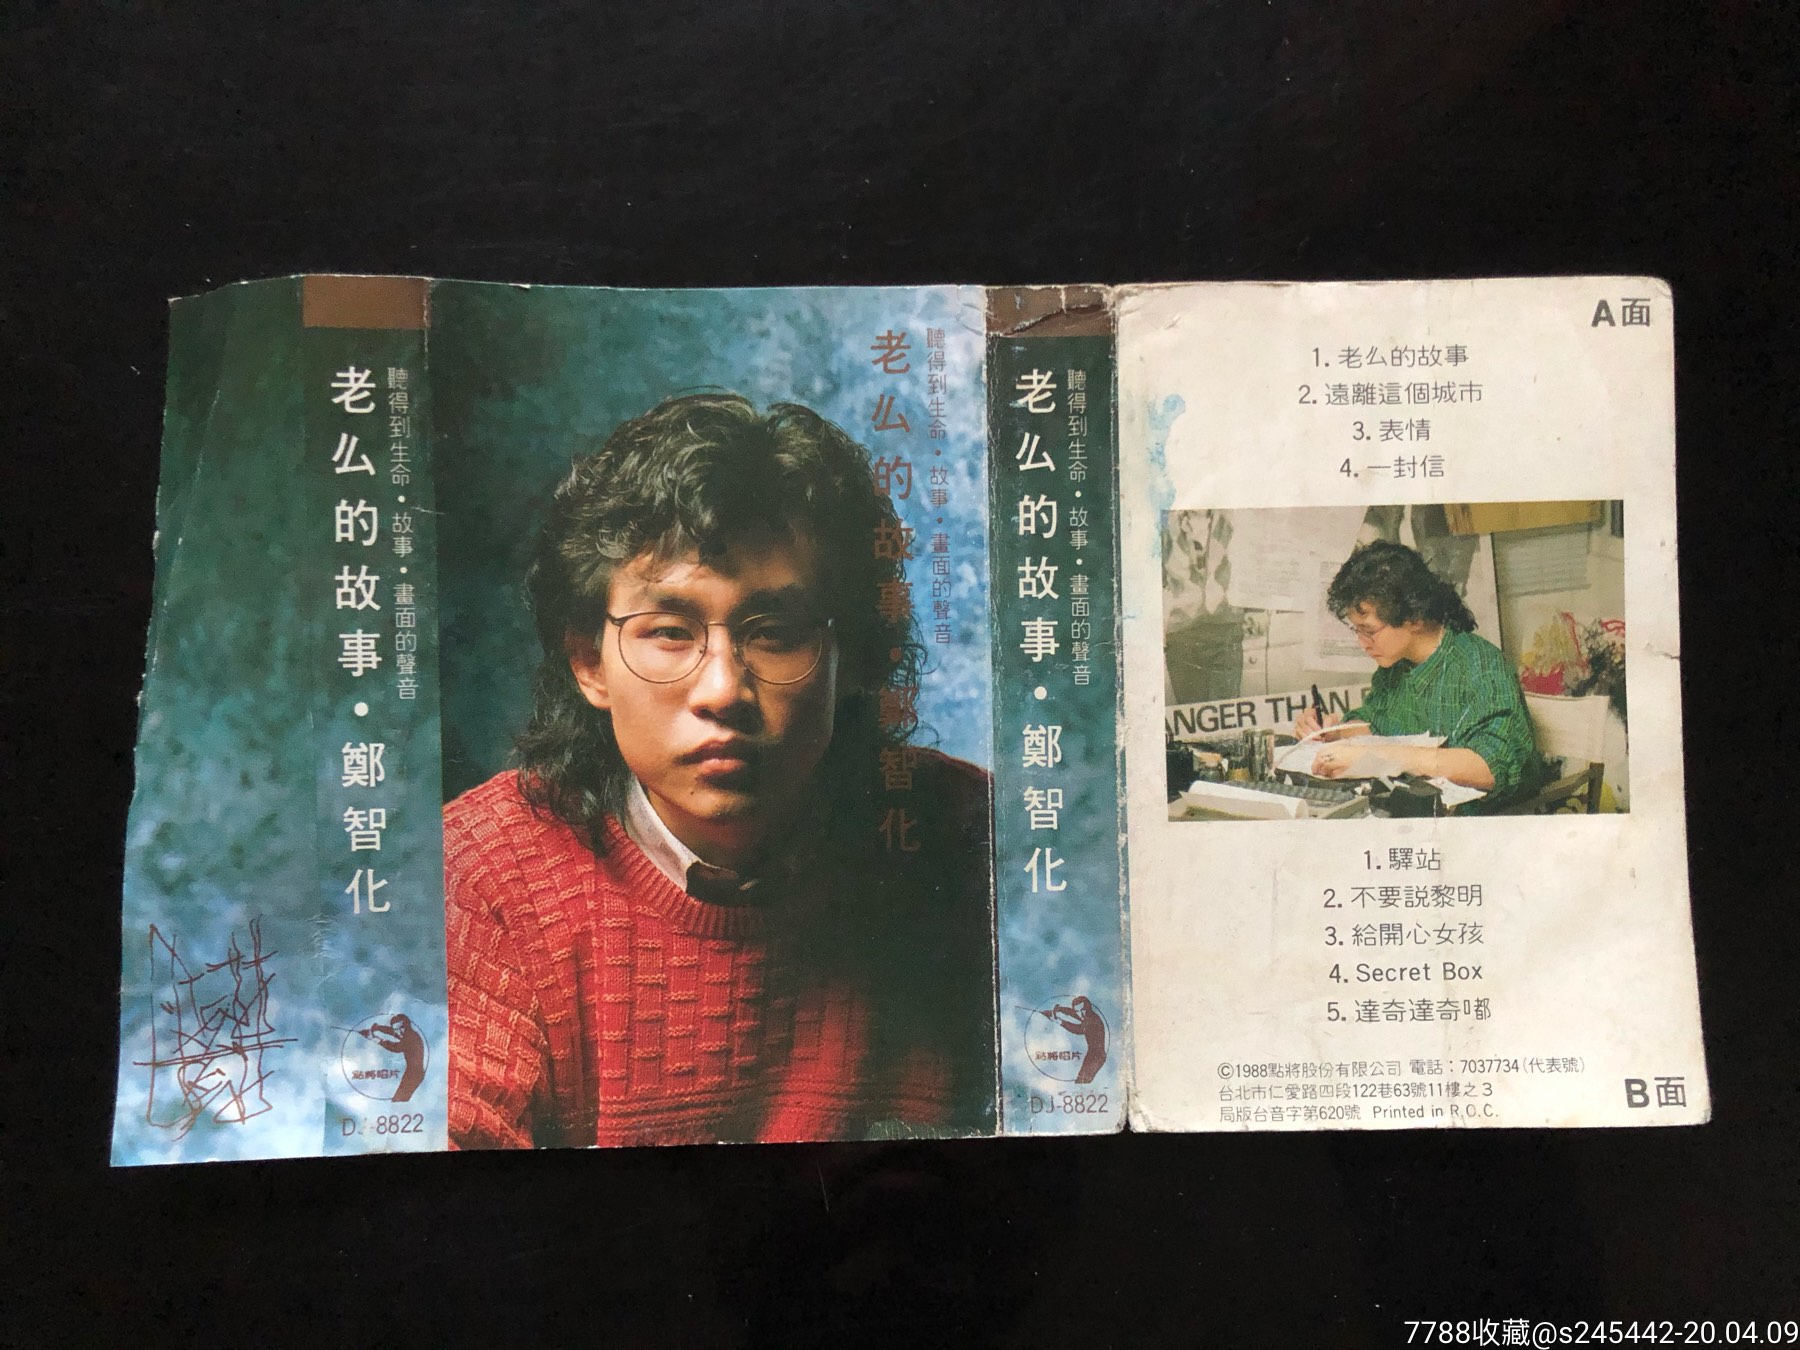 【只是封面】郑智化《老么的故事》台湾点将唱片原版磁带封面